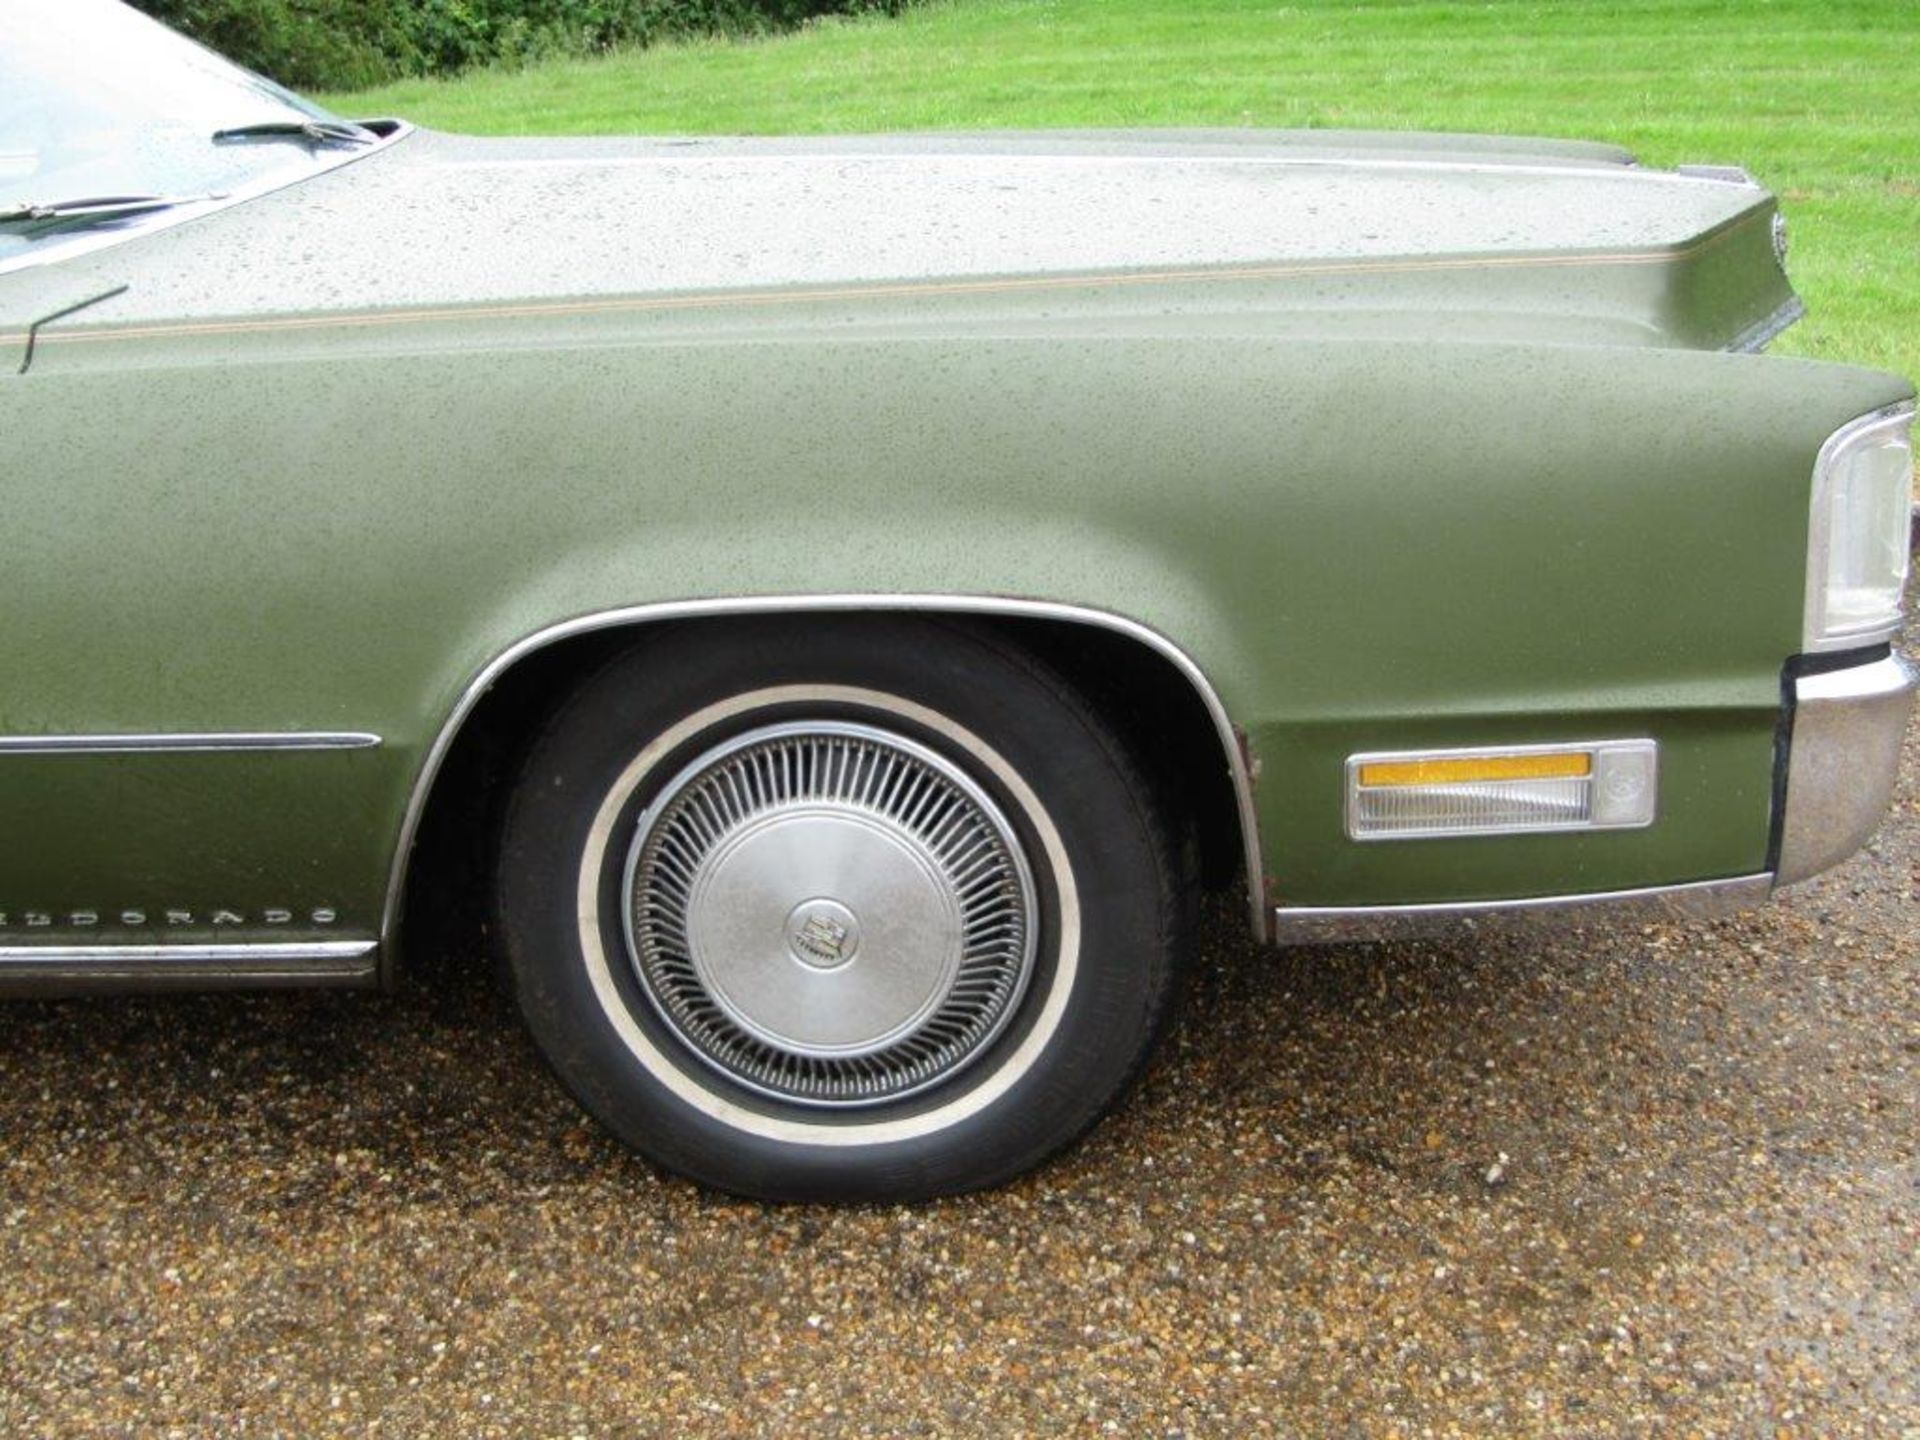 1970 Cadillac Eldorado Coupe LHD - Image 2 of 22